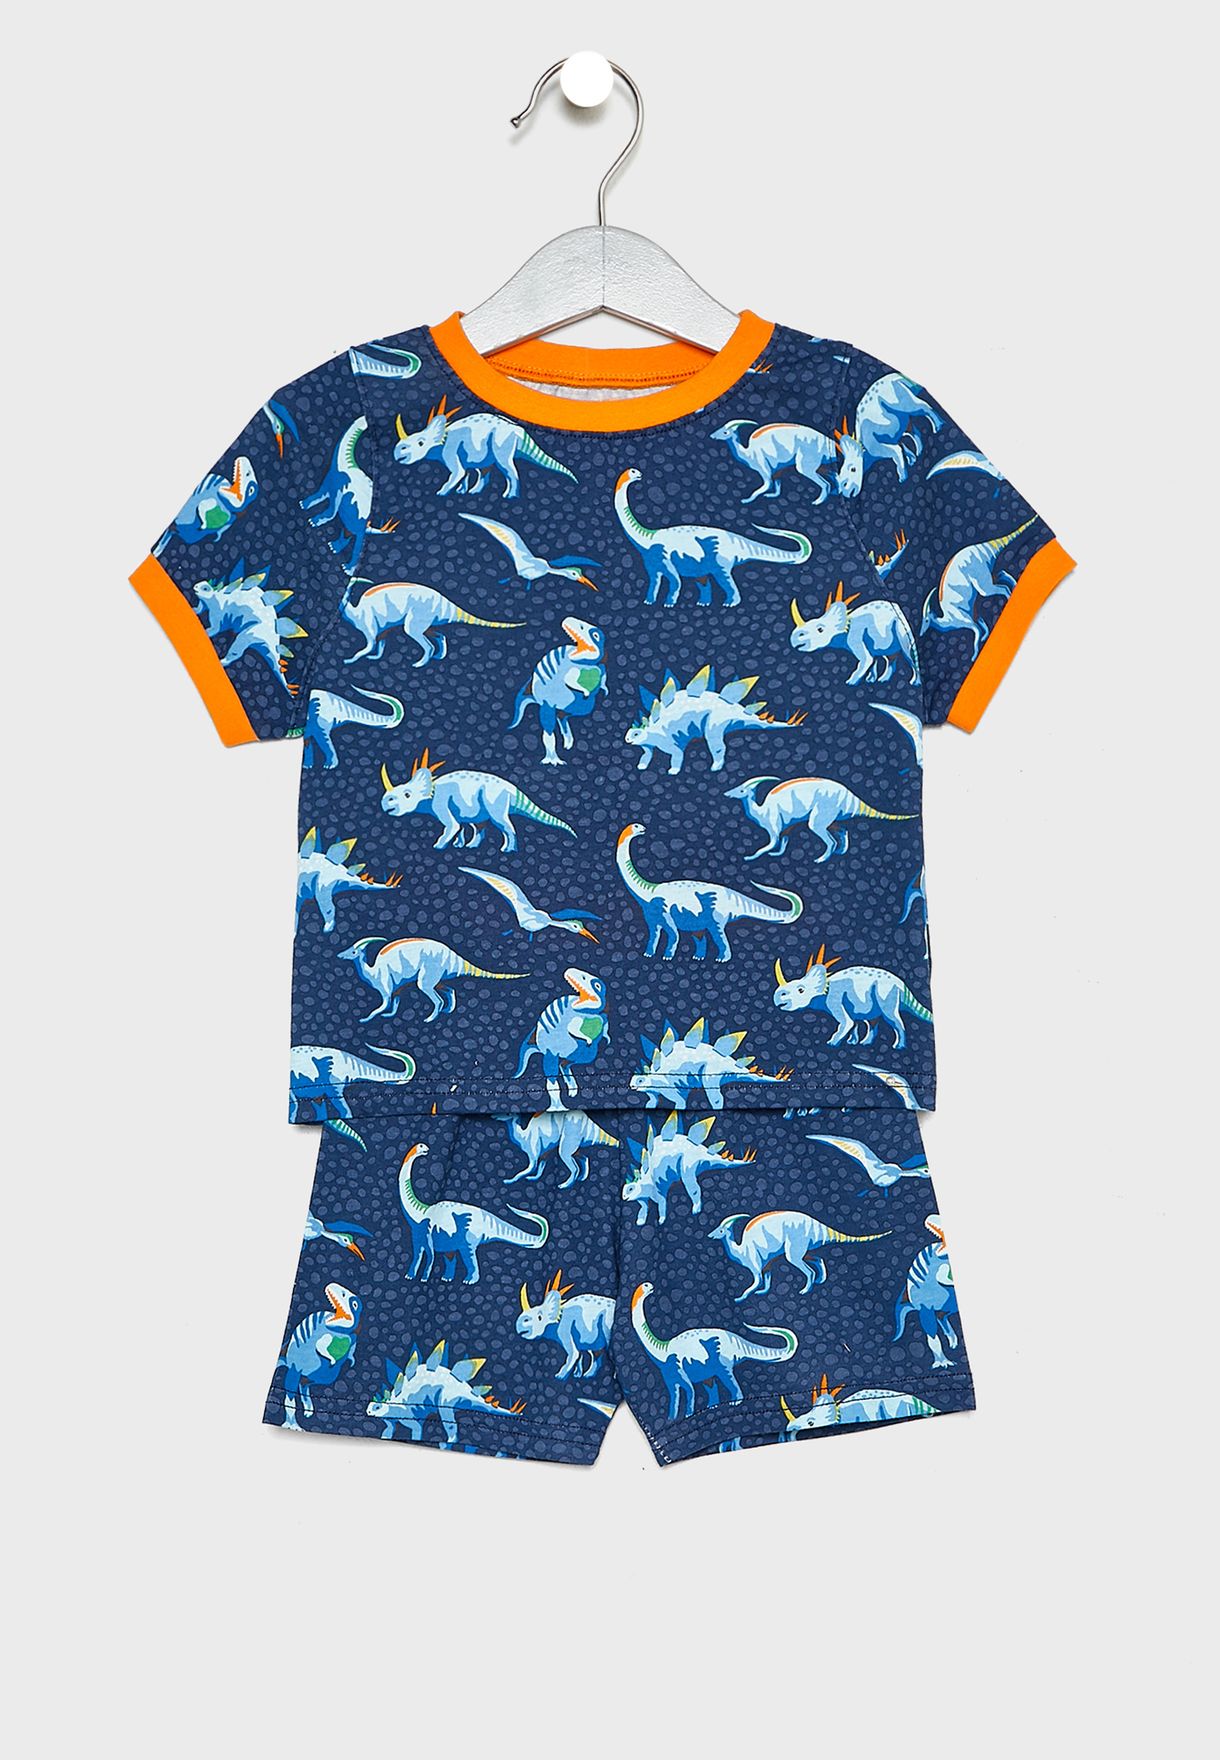 cath kidston dinosaur pyjamas